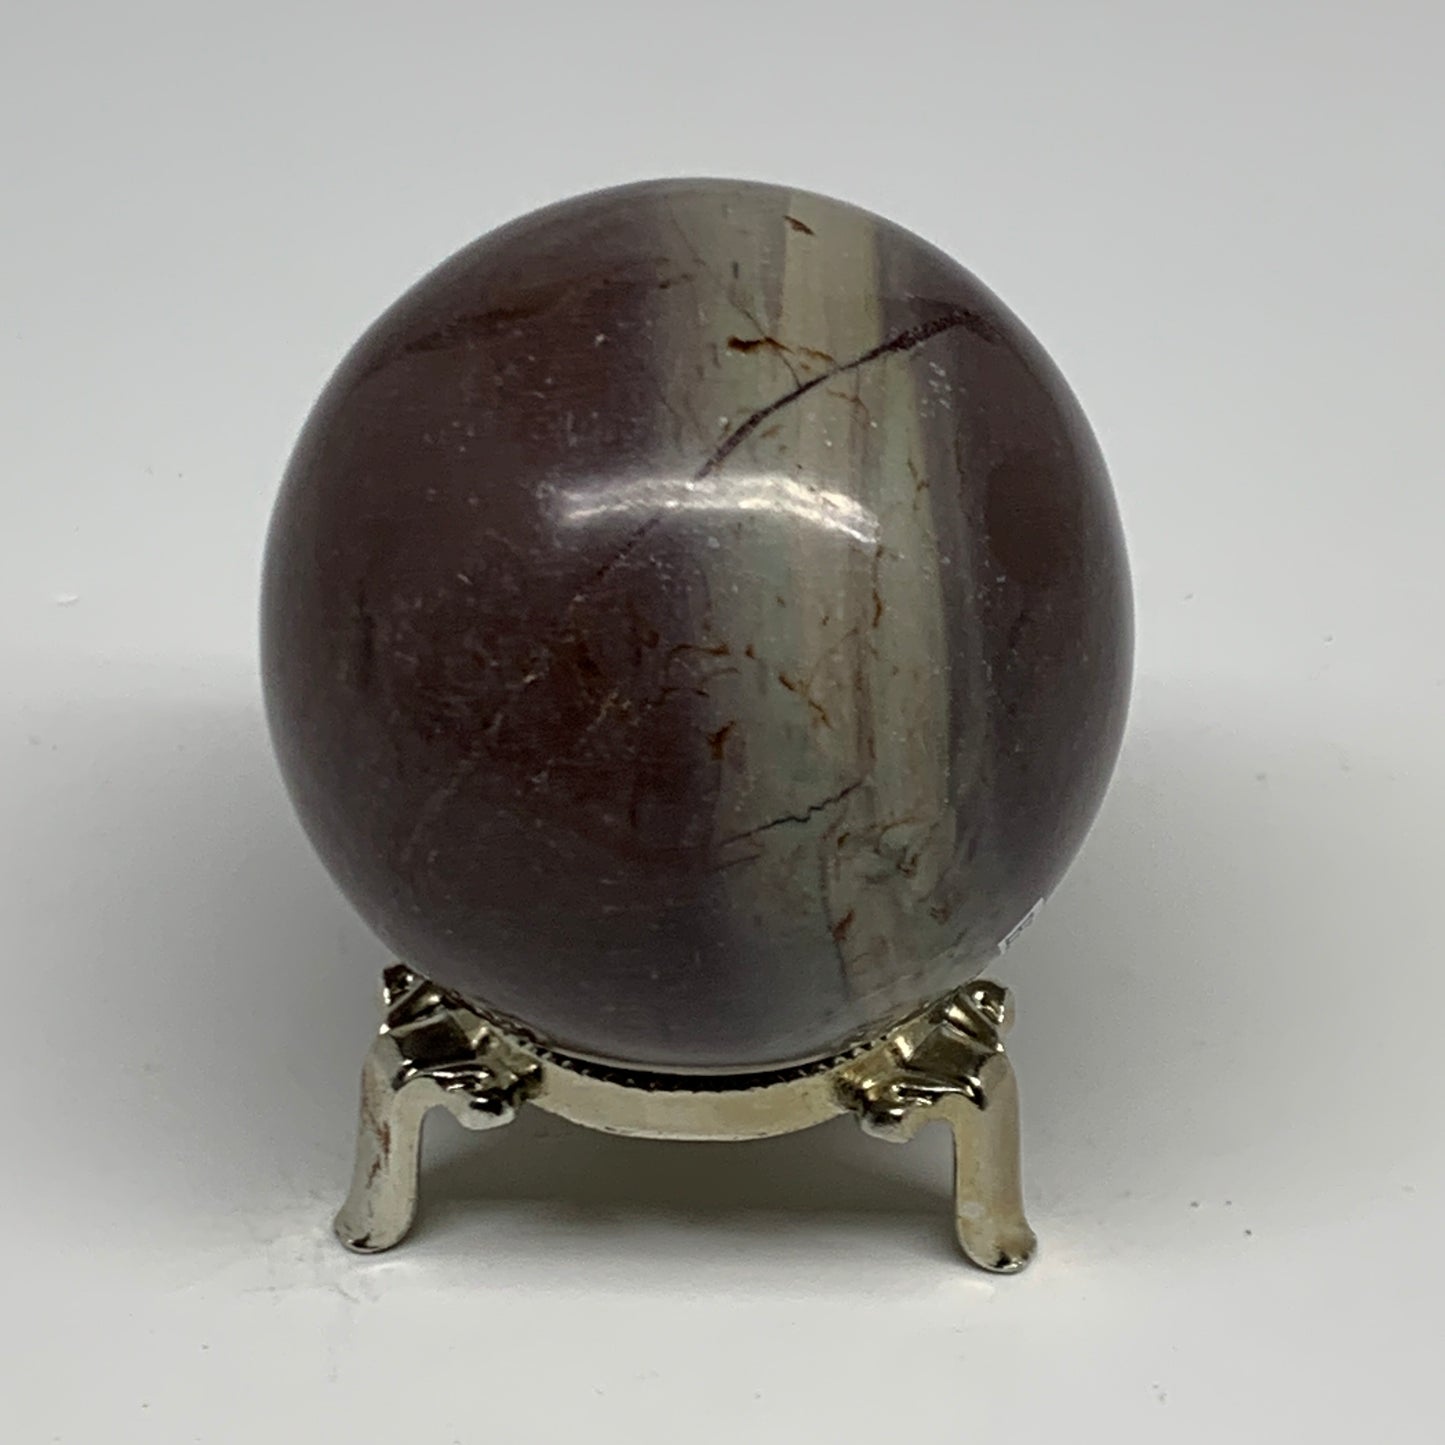 0.88 lbs, 2.5"(65mm) Red Jasper Sphere Gemstone,Healing Crystal, B29814